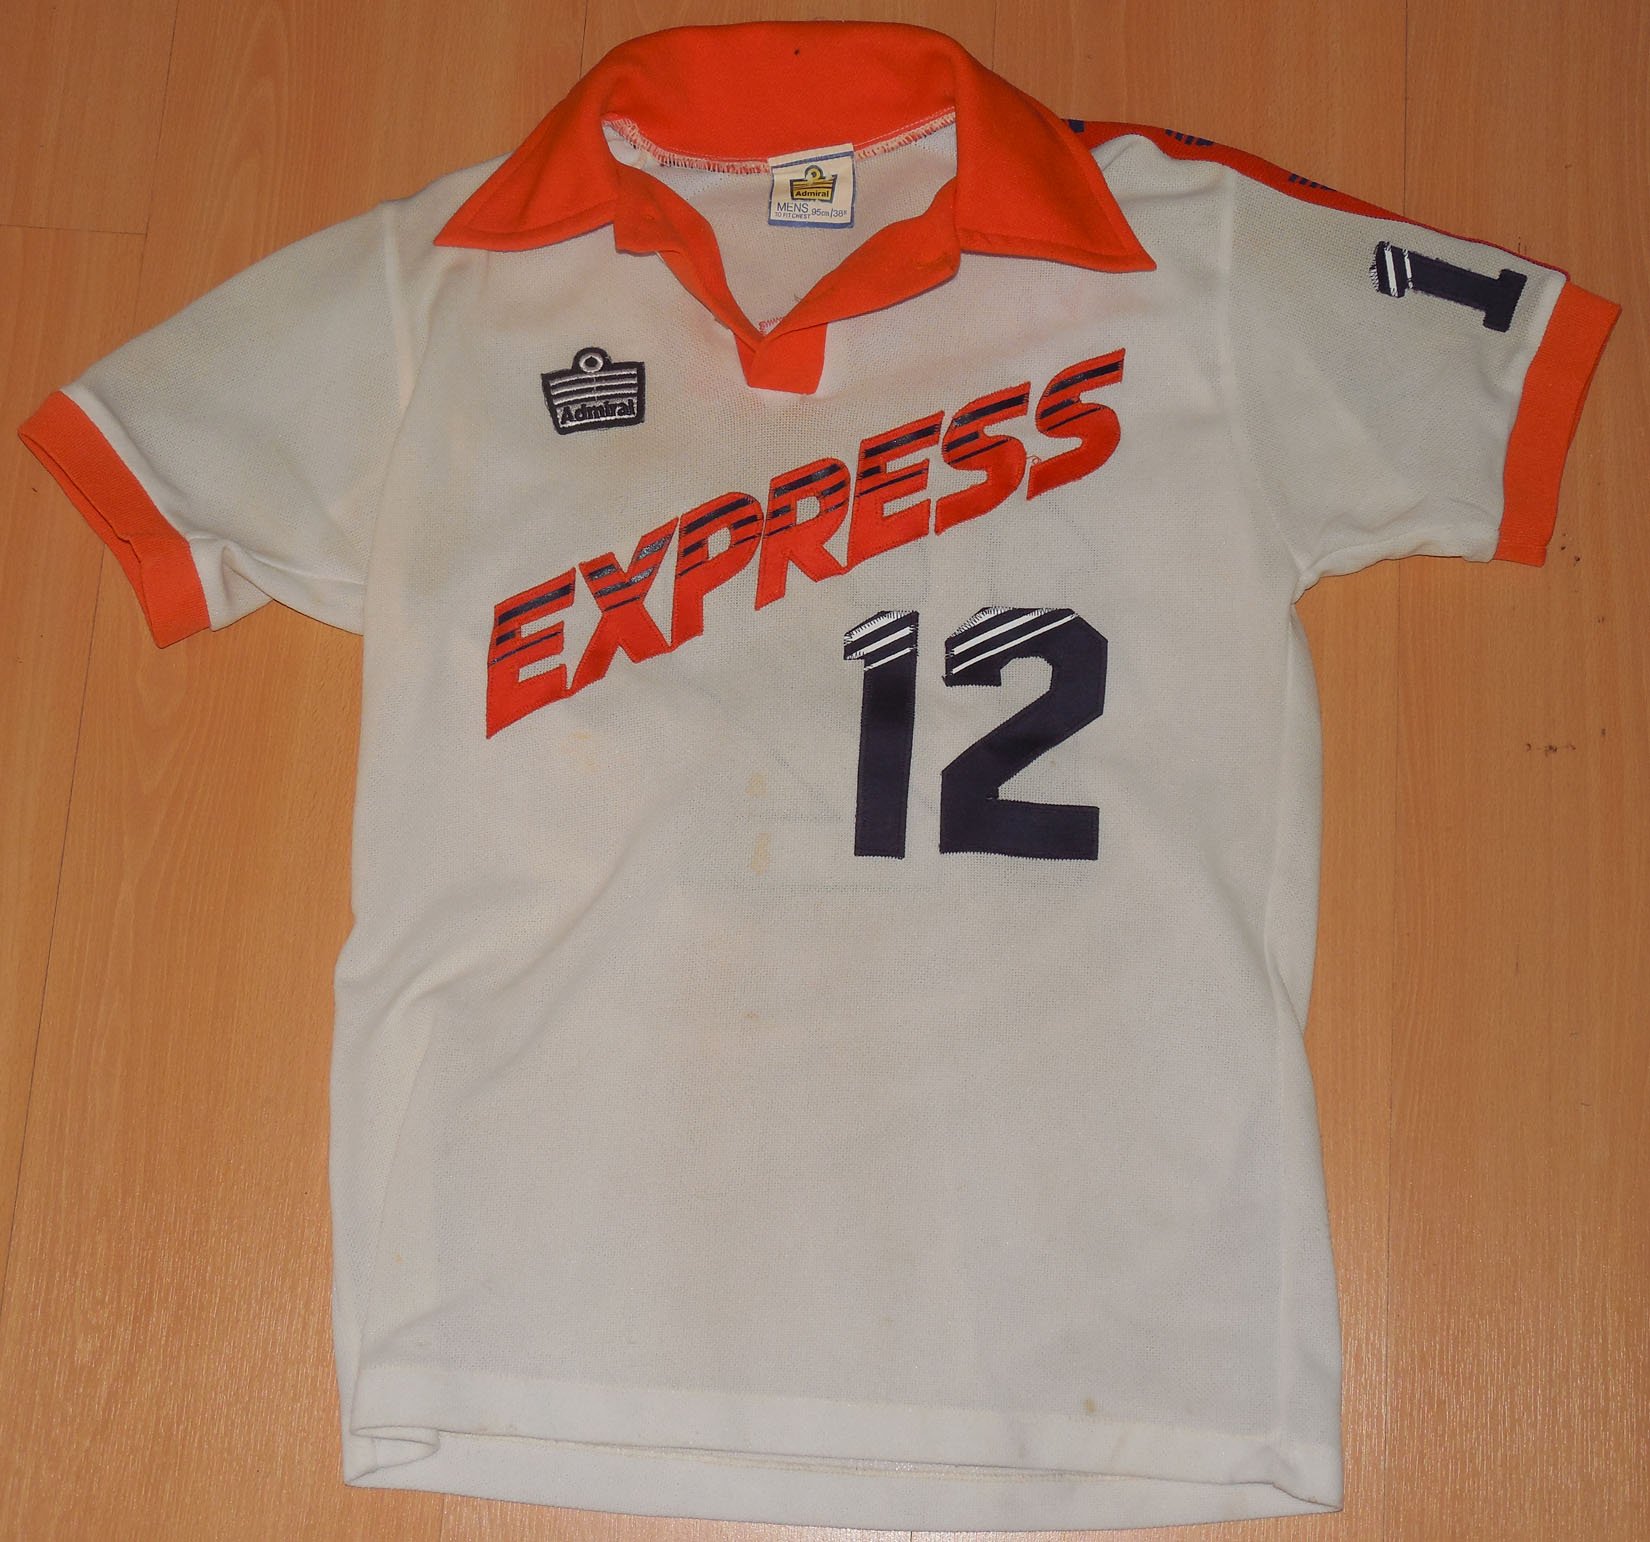 Express 78 Home Jersey Angus Moffatt (1).JPG